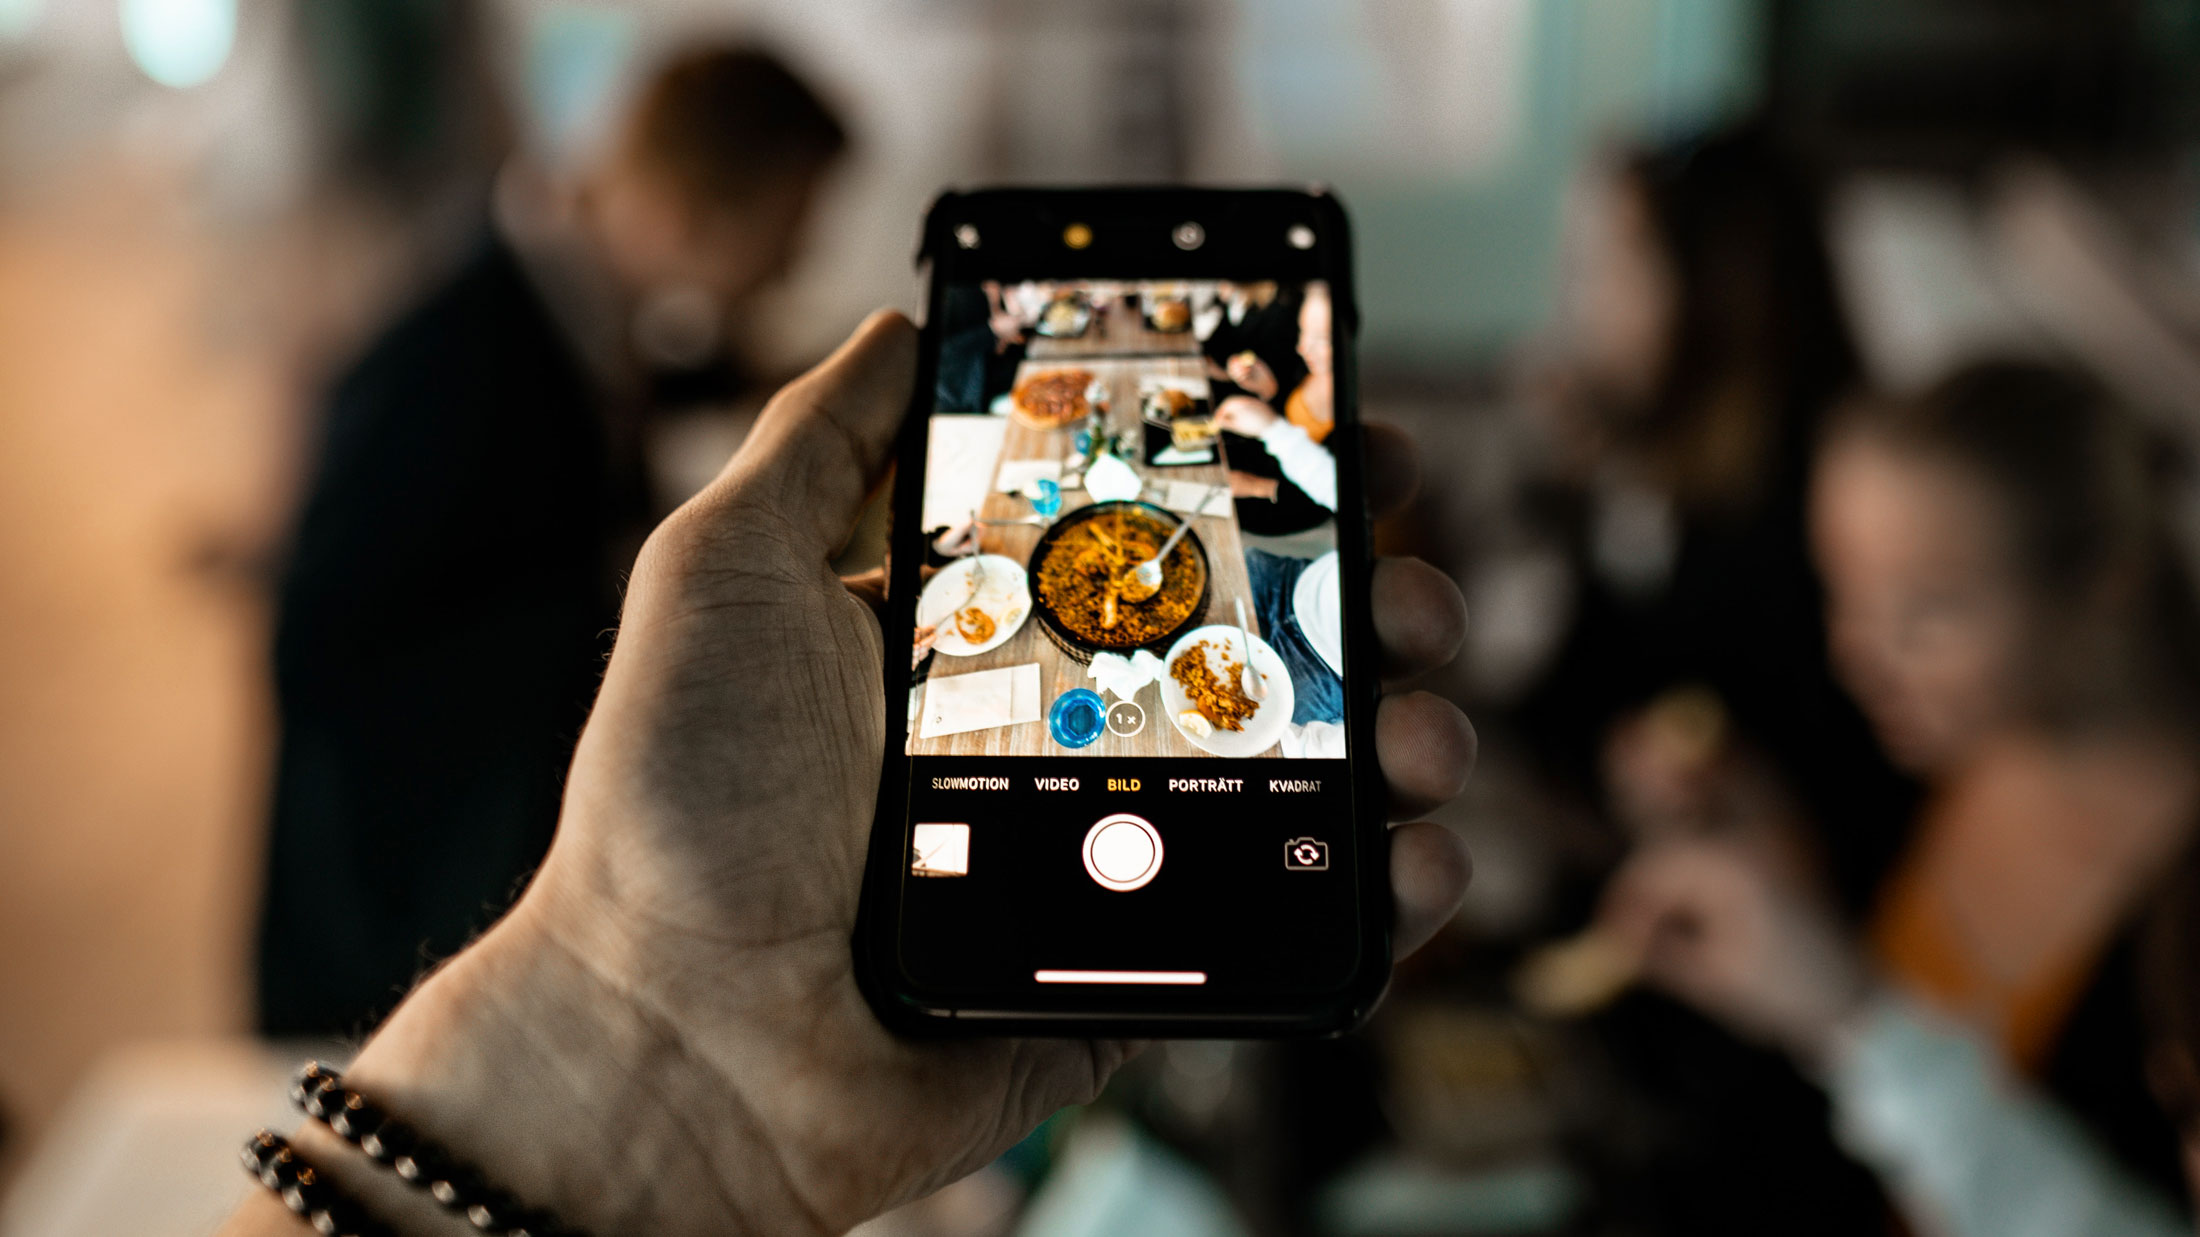 Ein gemütliches Abendessen wird von einem iPhone fotografiert.